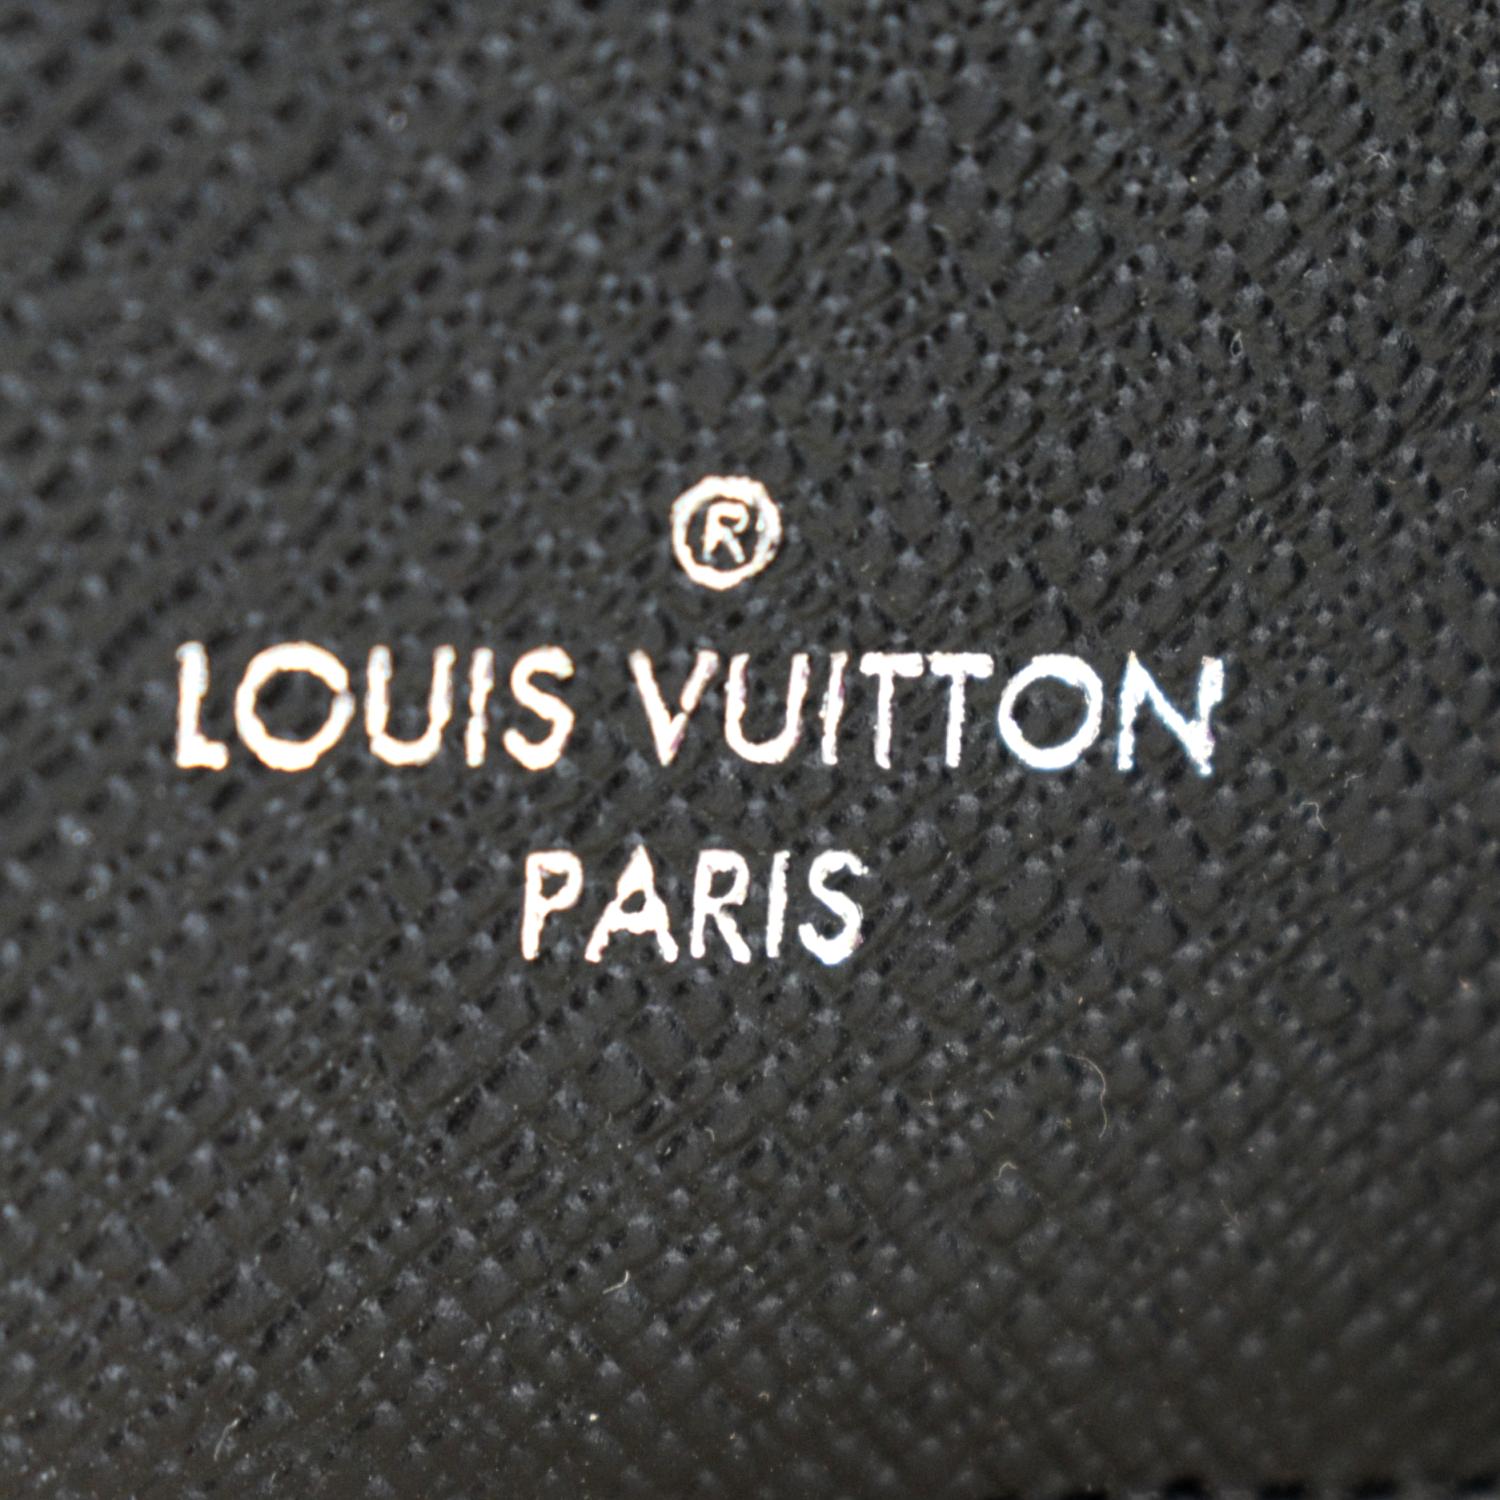 Women's Designer Wallets - Leather, Canvas Wallets for Women - LOUIS VUITTON  ® - 2